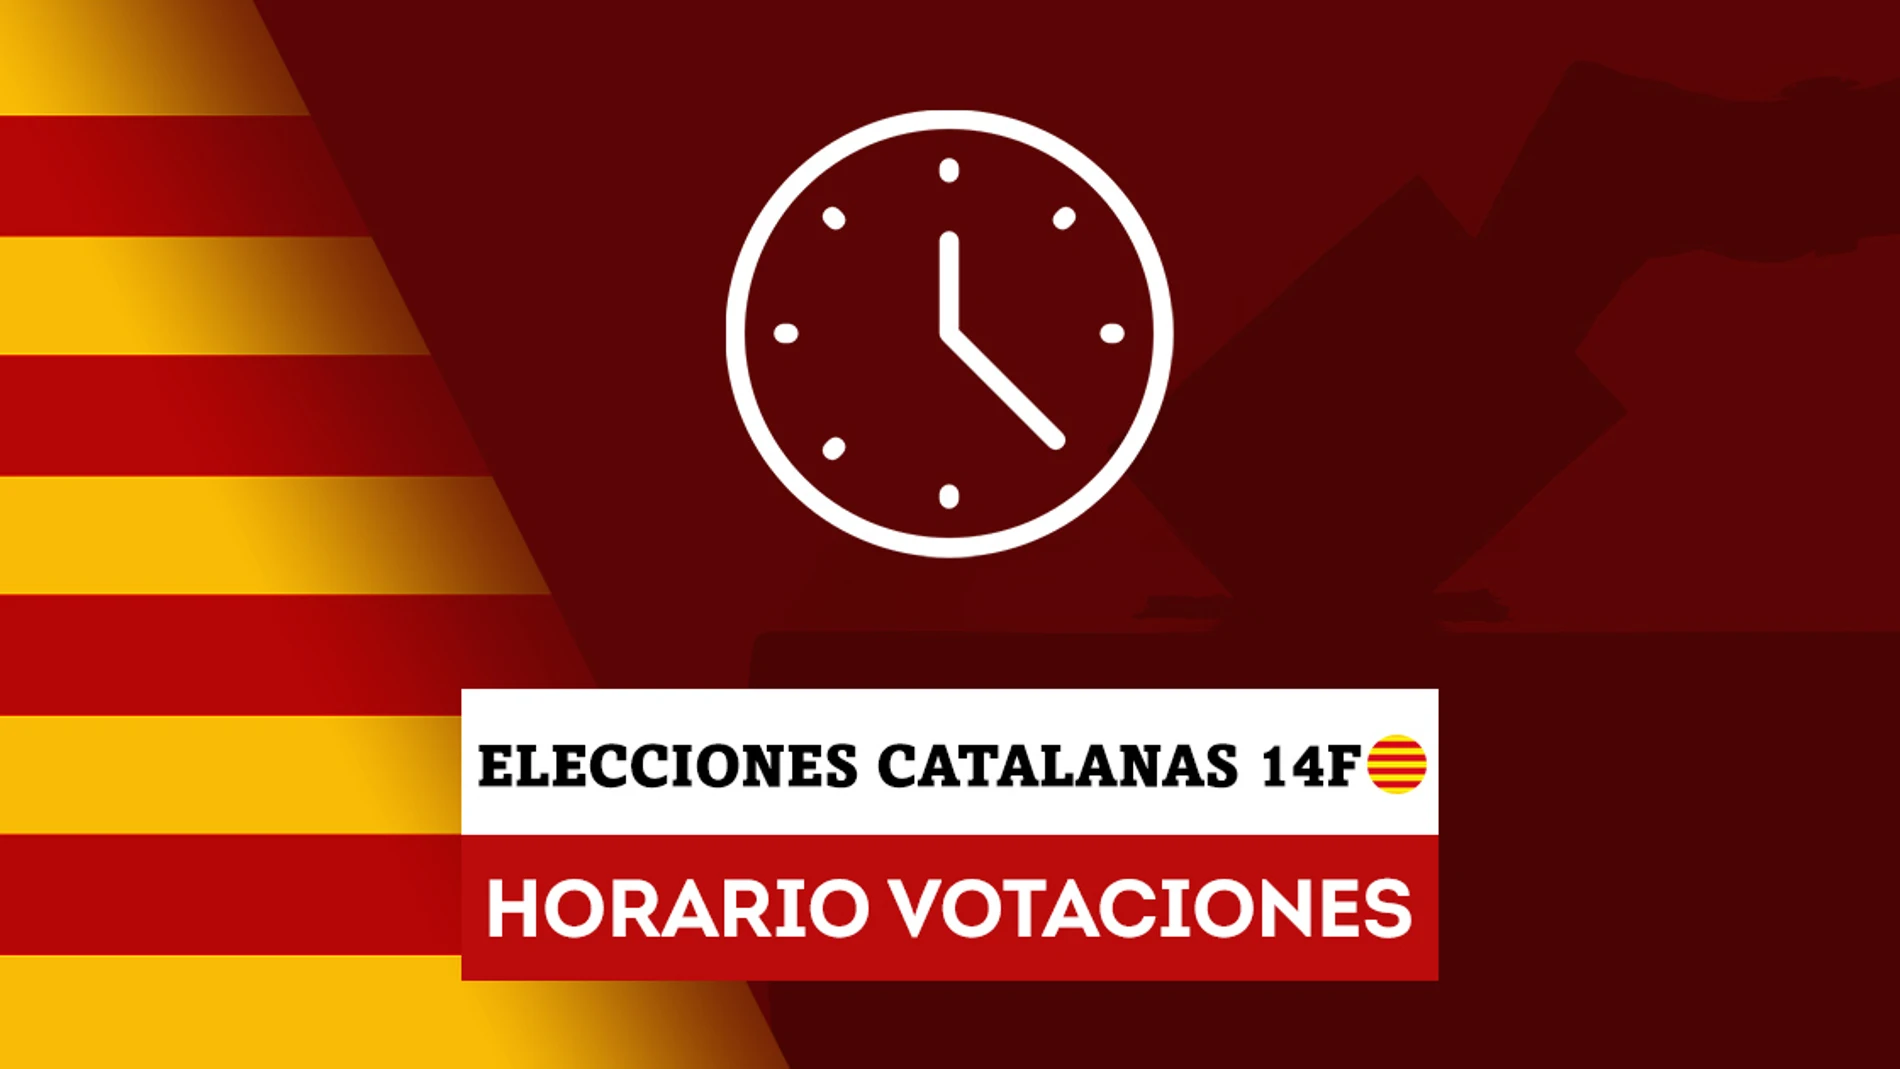 Hasta qué puede votar en las elecciones catalanas? ¿A qué hora se abren los electorales?